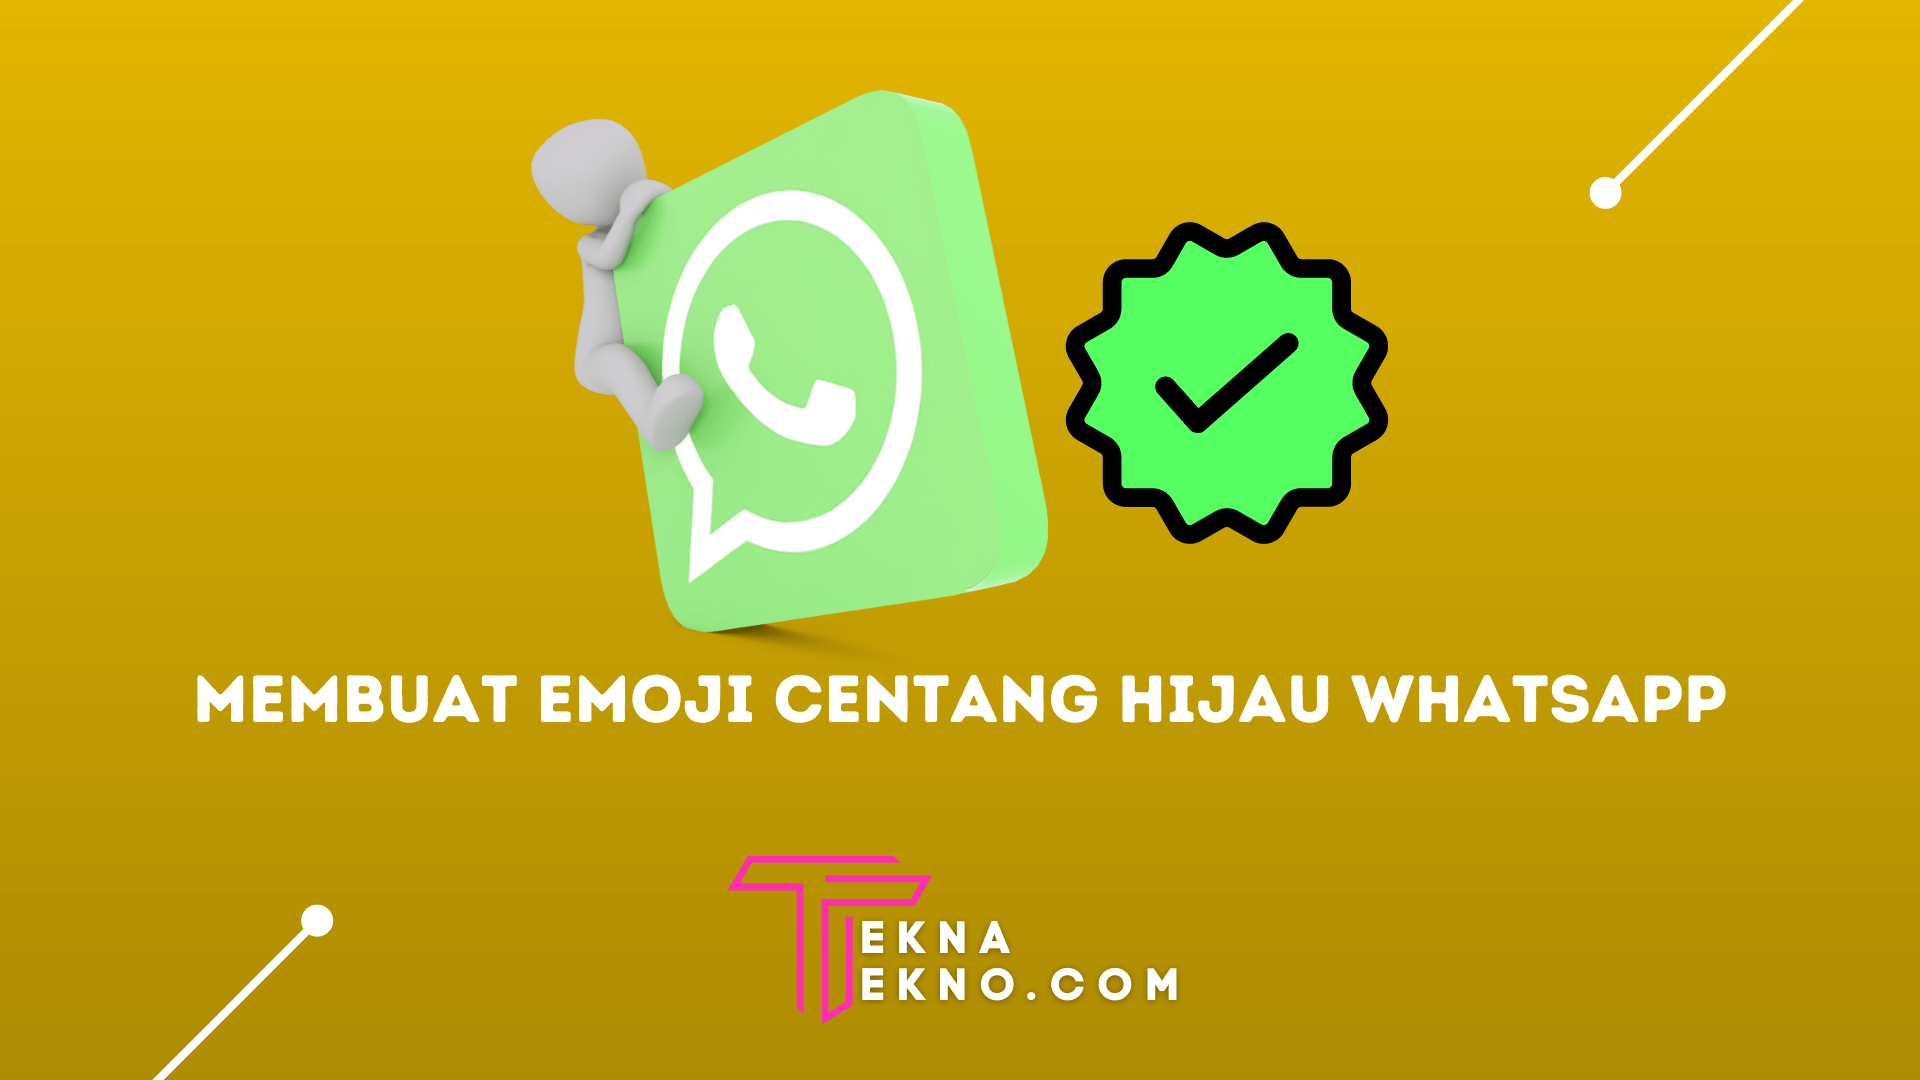 6 Cara Membuat Emoji Centang Hijau Whatsapp di Android dan iOS dengan Mudah